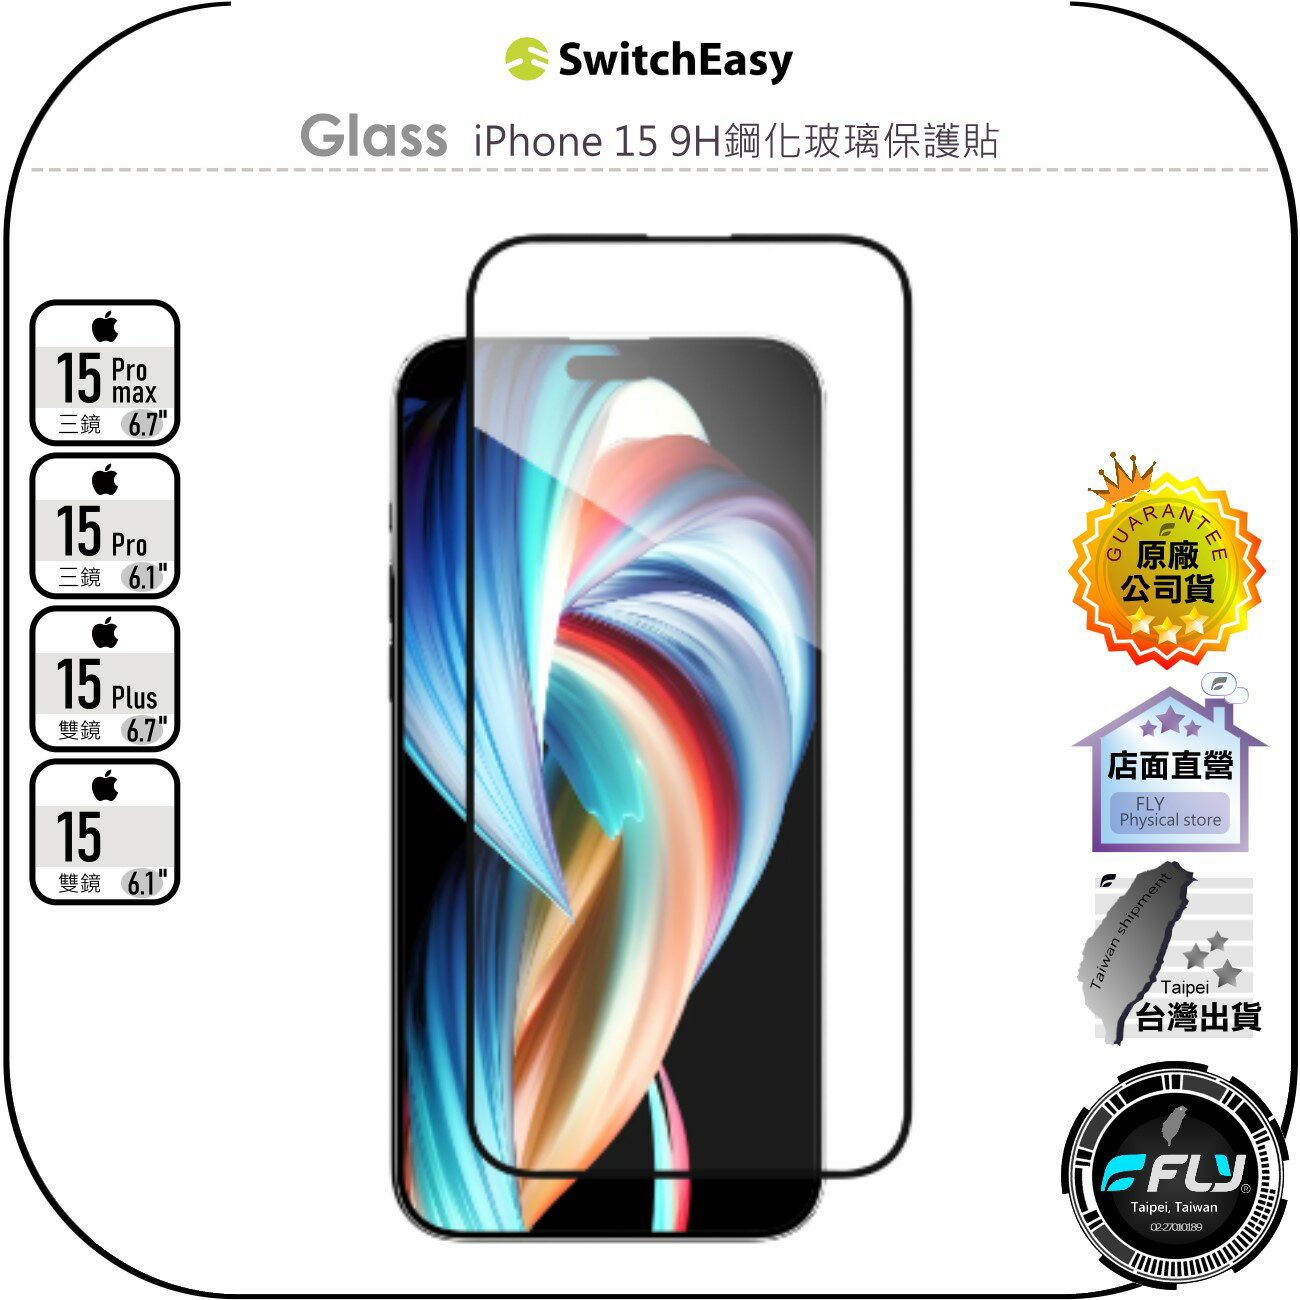 【飛翔商城】SwitchEasy 魚骨牌 Glass iPhone 15 9H鋼化玻璃保護貼◉Pro Max Plus